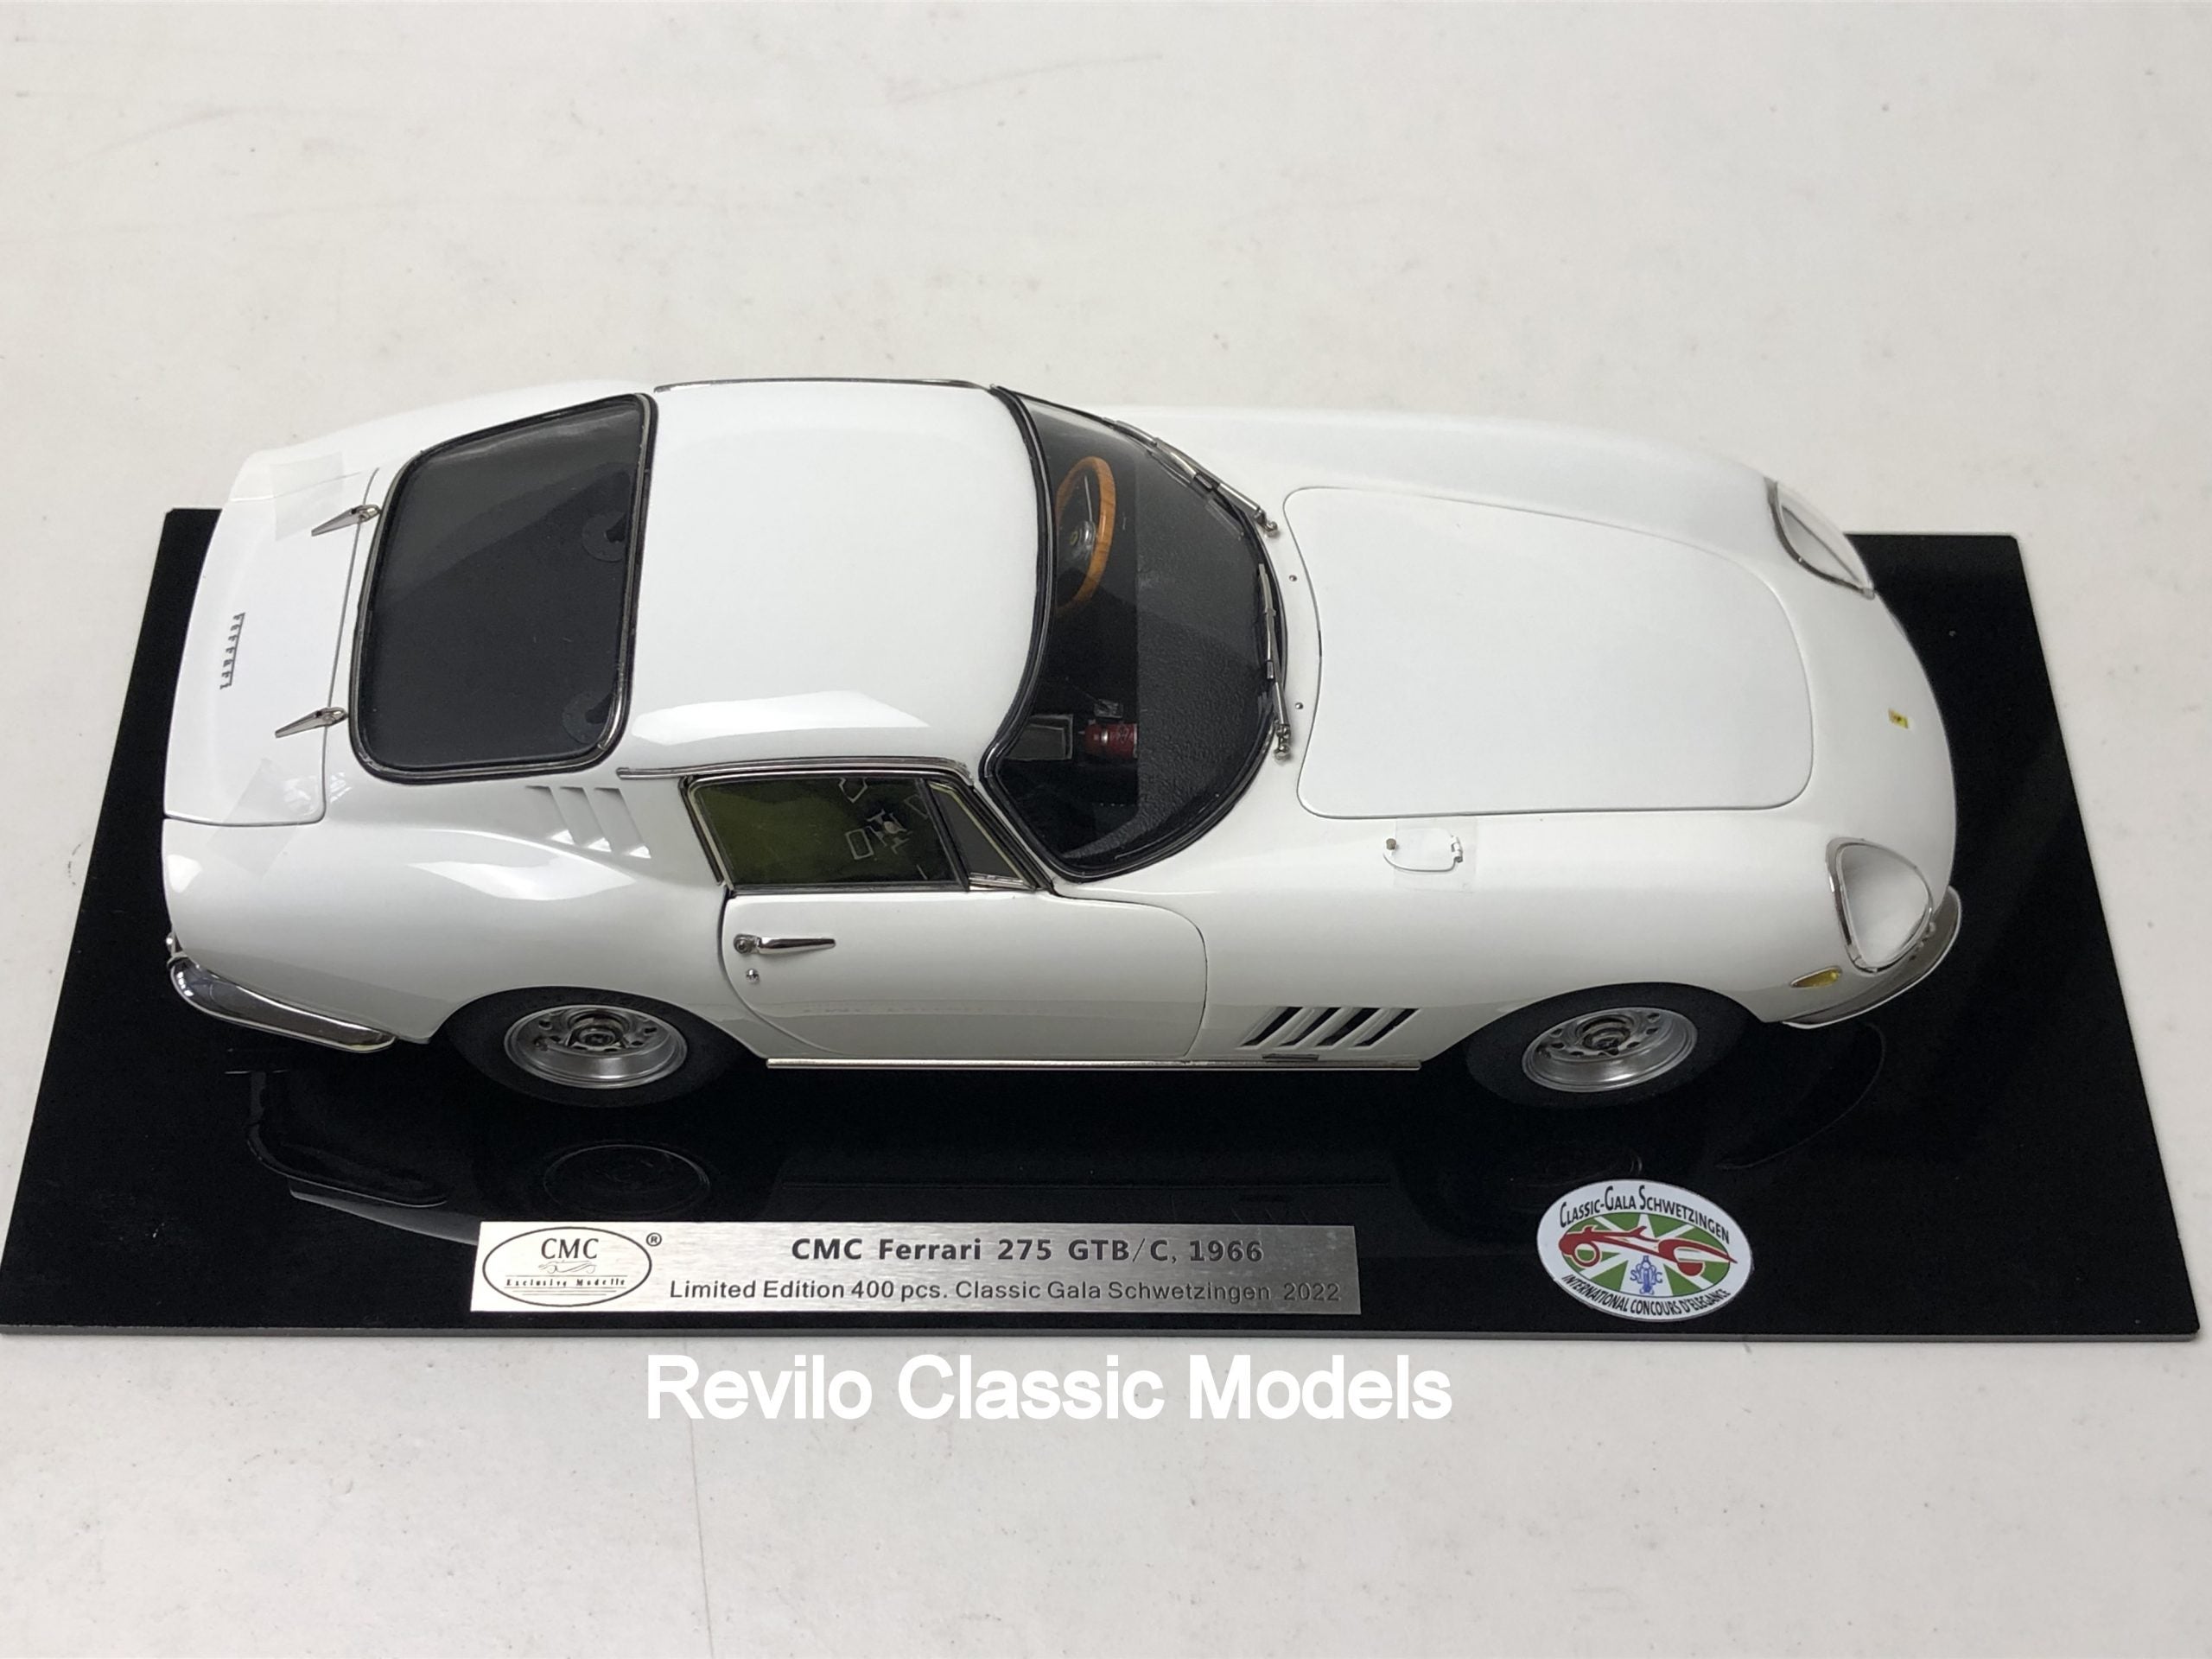 CMC M241 1:18 Ferrari 275 GTB/C Elfenbein Limited Edition